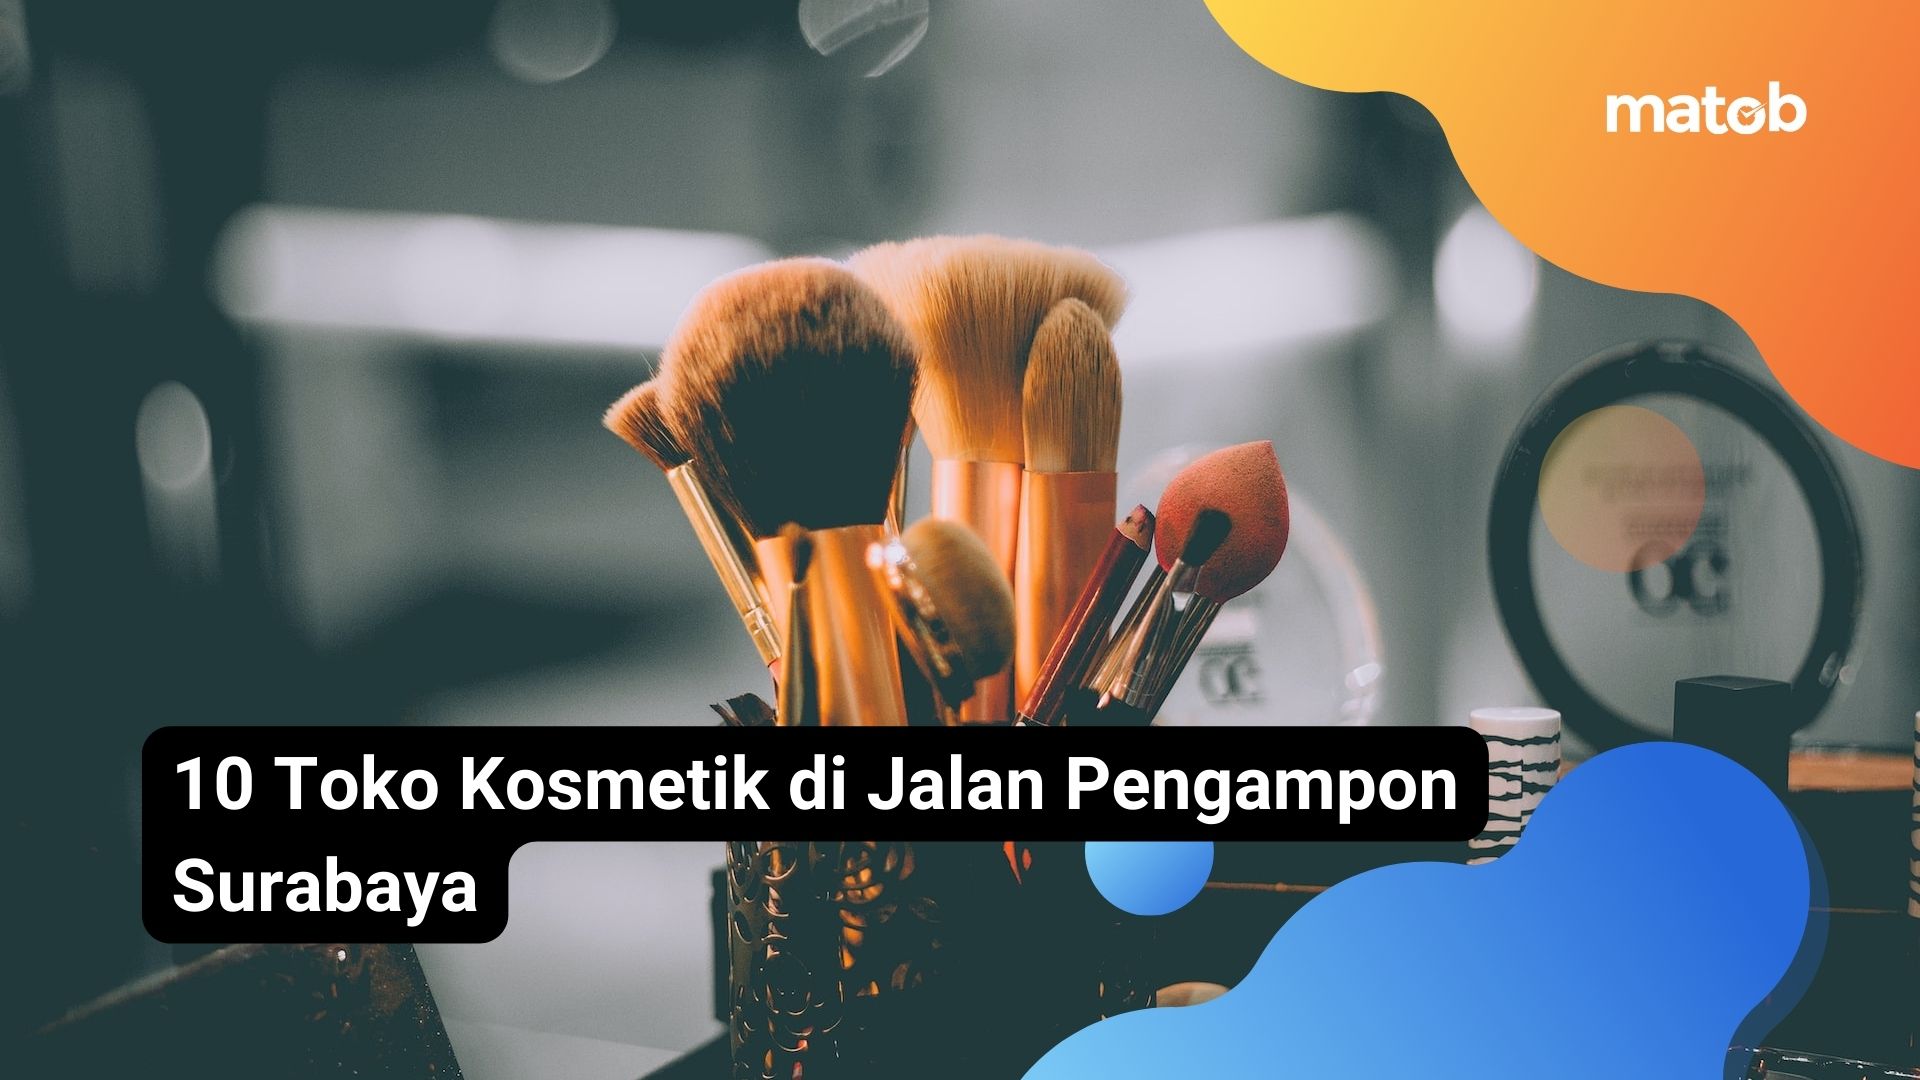 10 Toko Kosmetik di Jalan Pengampon Surabaya